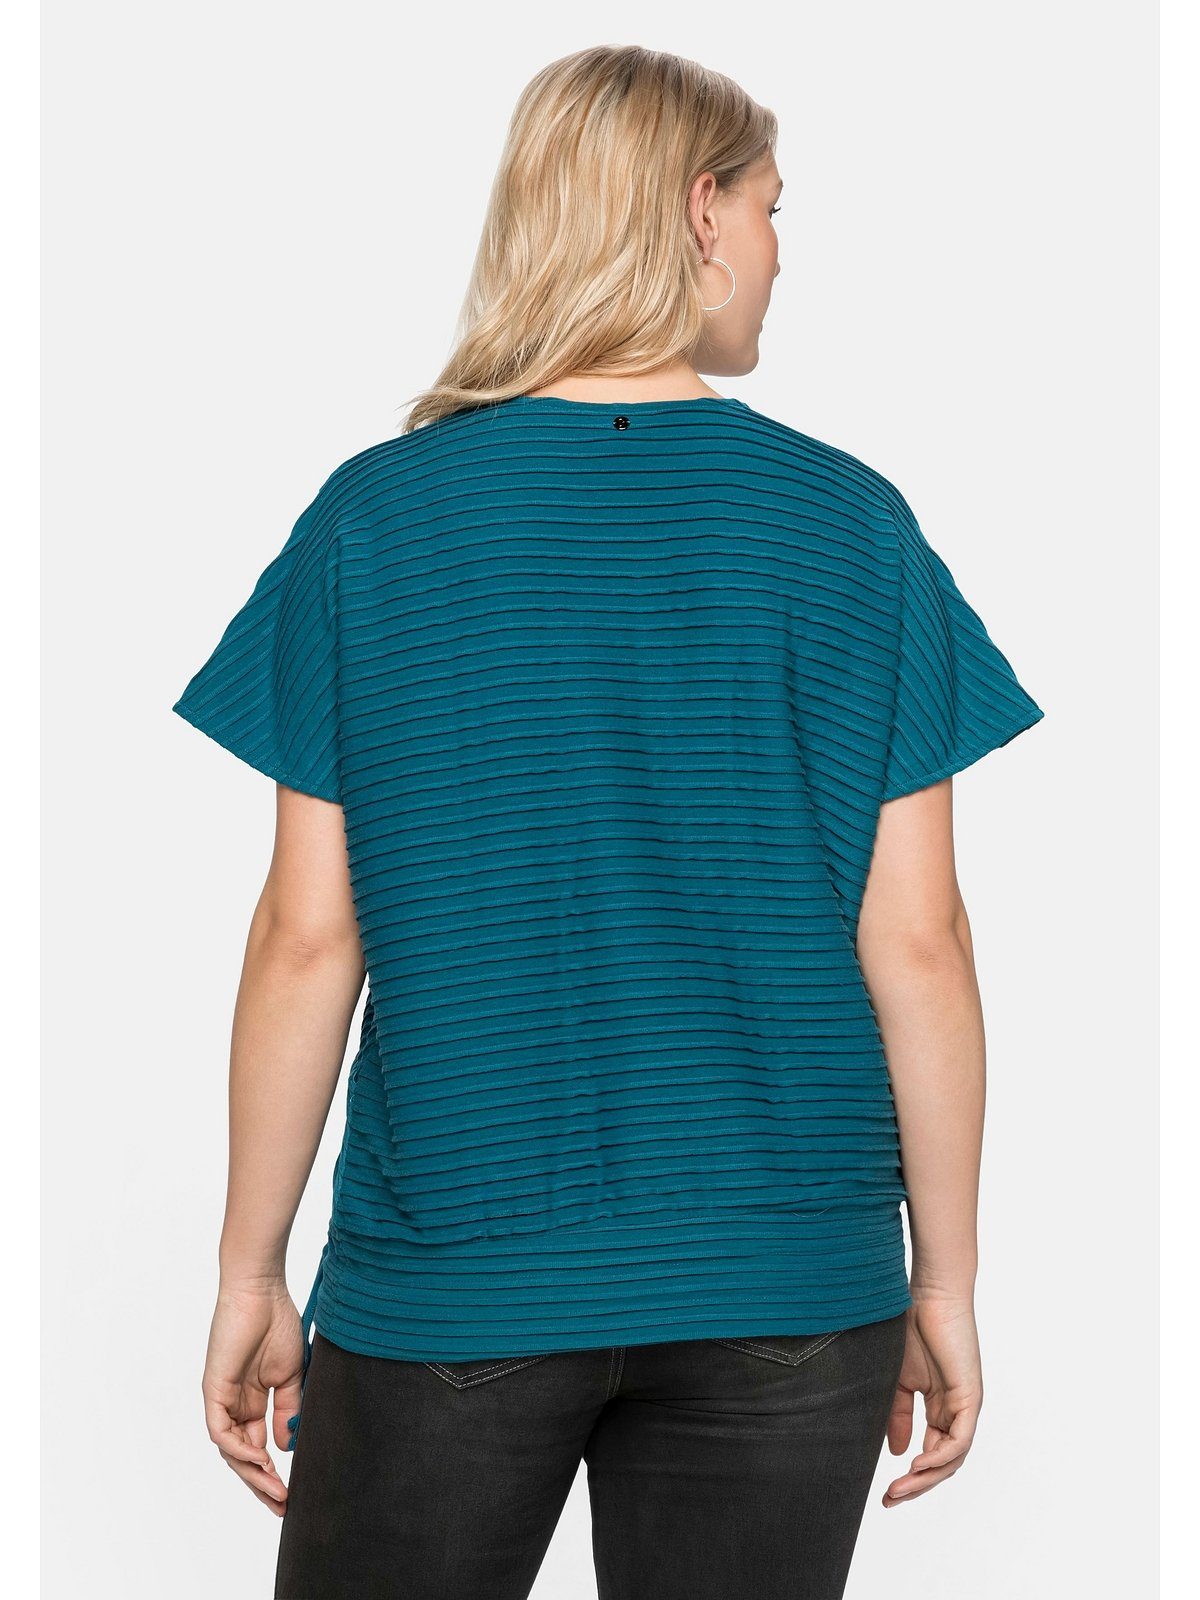 Sheego T-Shirt mit Größen aufwendigen in Biesen Wickeloptik, Große